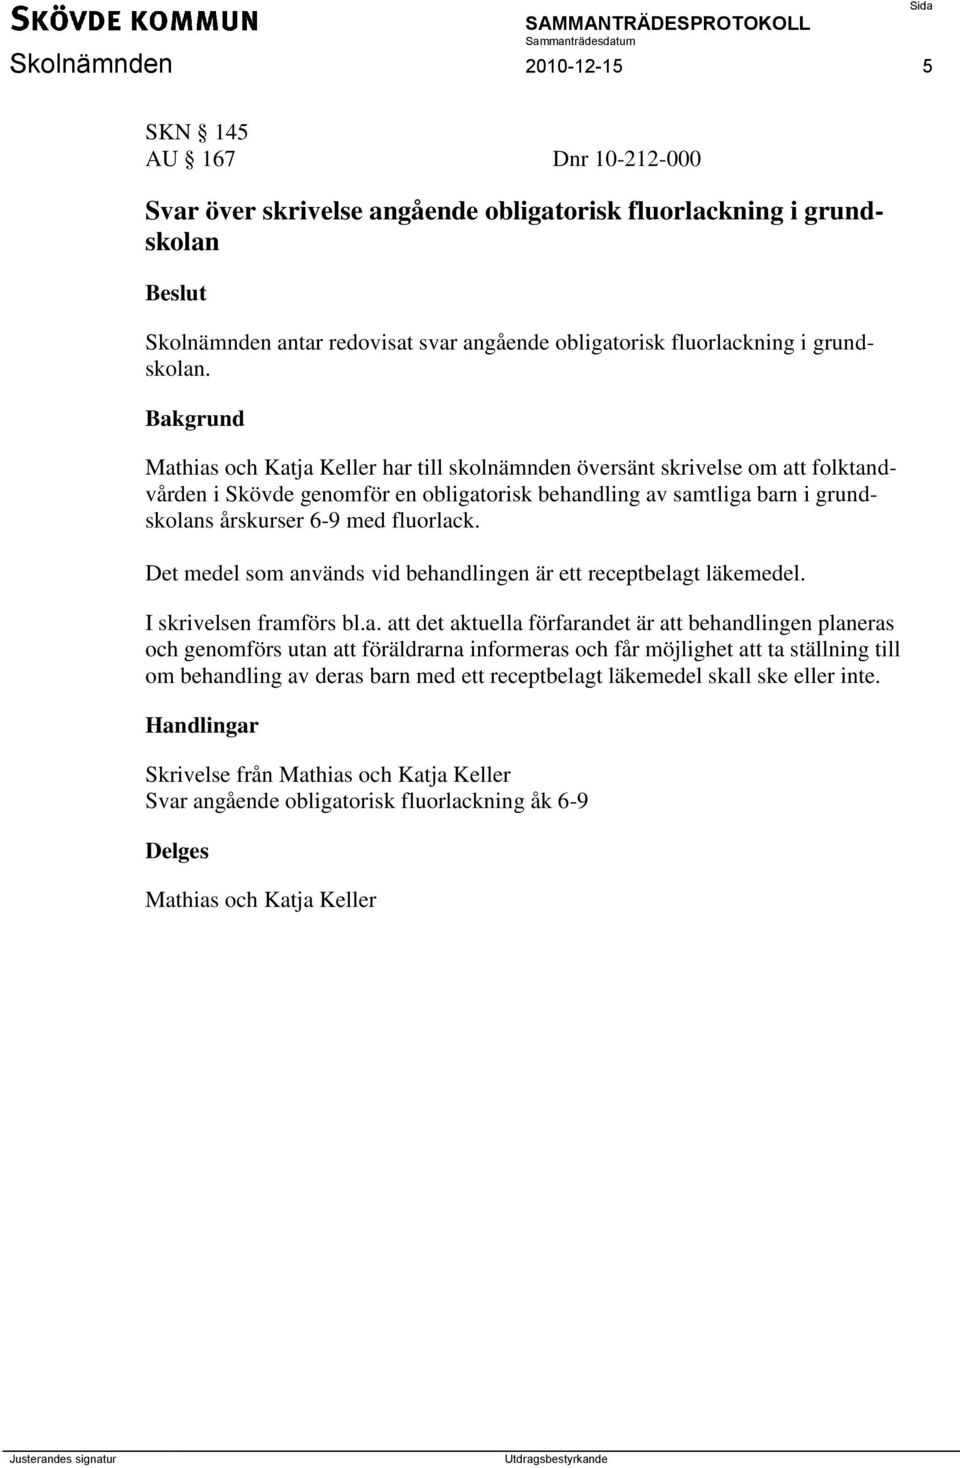 Mathias och Katja Keller har till skolnämnden översänt skrivelse om att folktandvården i Skövde genomför en obligatorisk behandling av samtliga barn i grundskolans årskurser 6-9 med fluorlack.